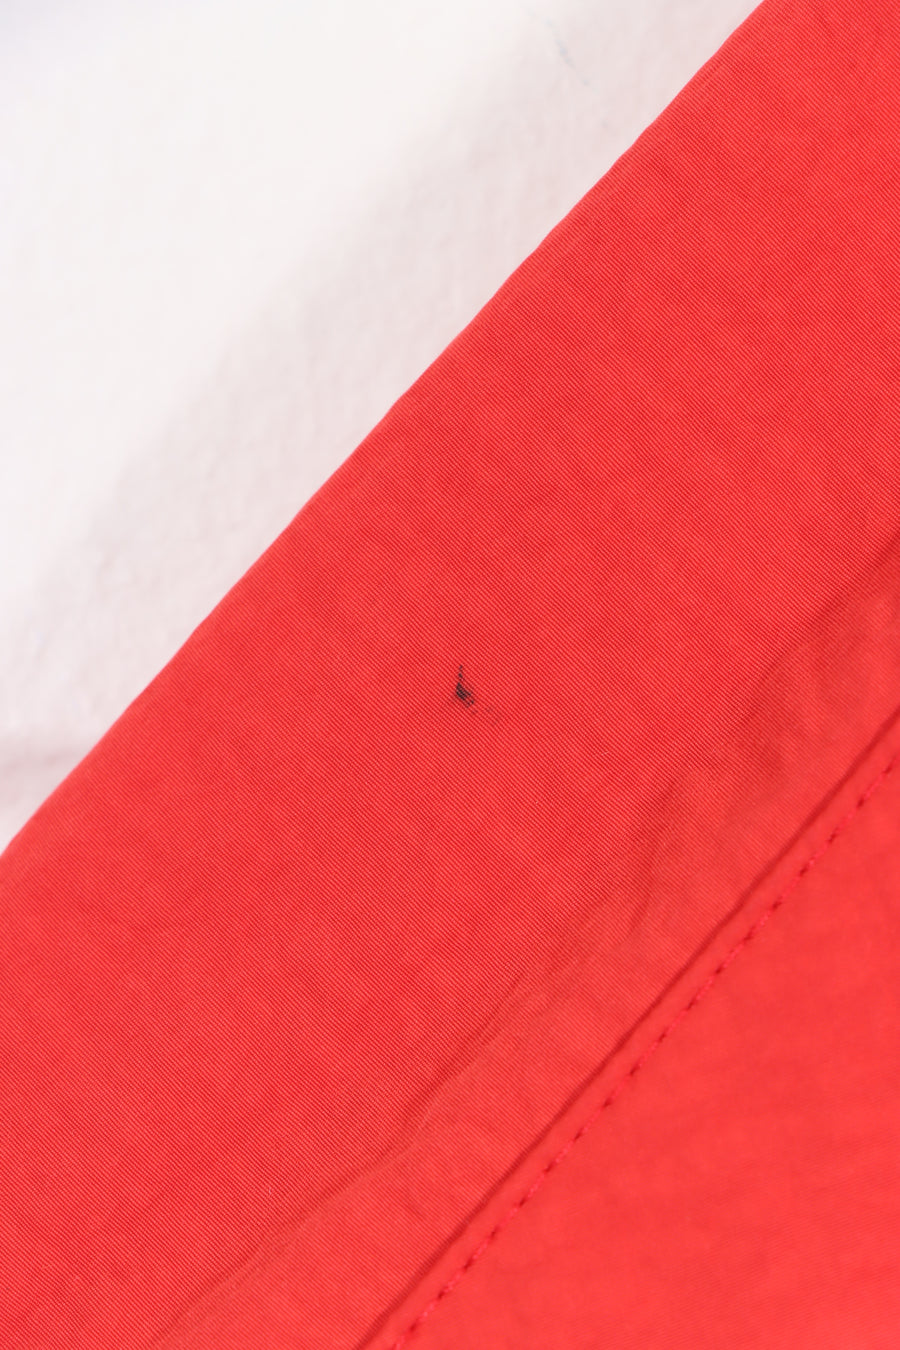 NIKE AIR Black & Red Anorak 1/4 Zip Hooded Windbreaker (L)